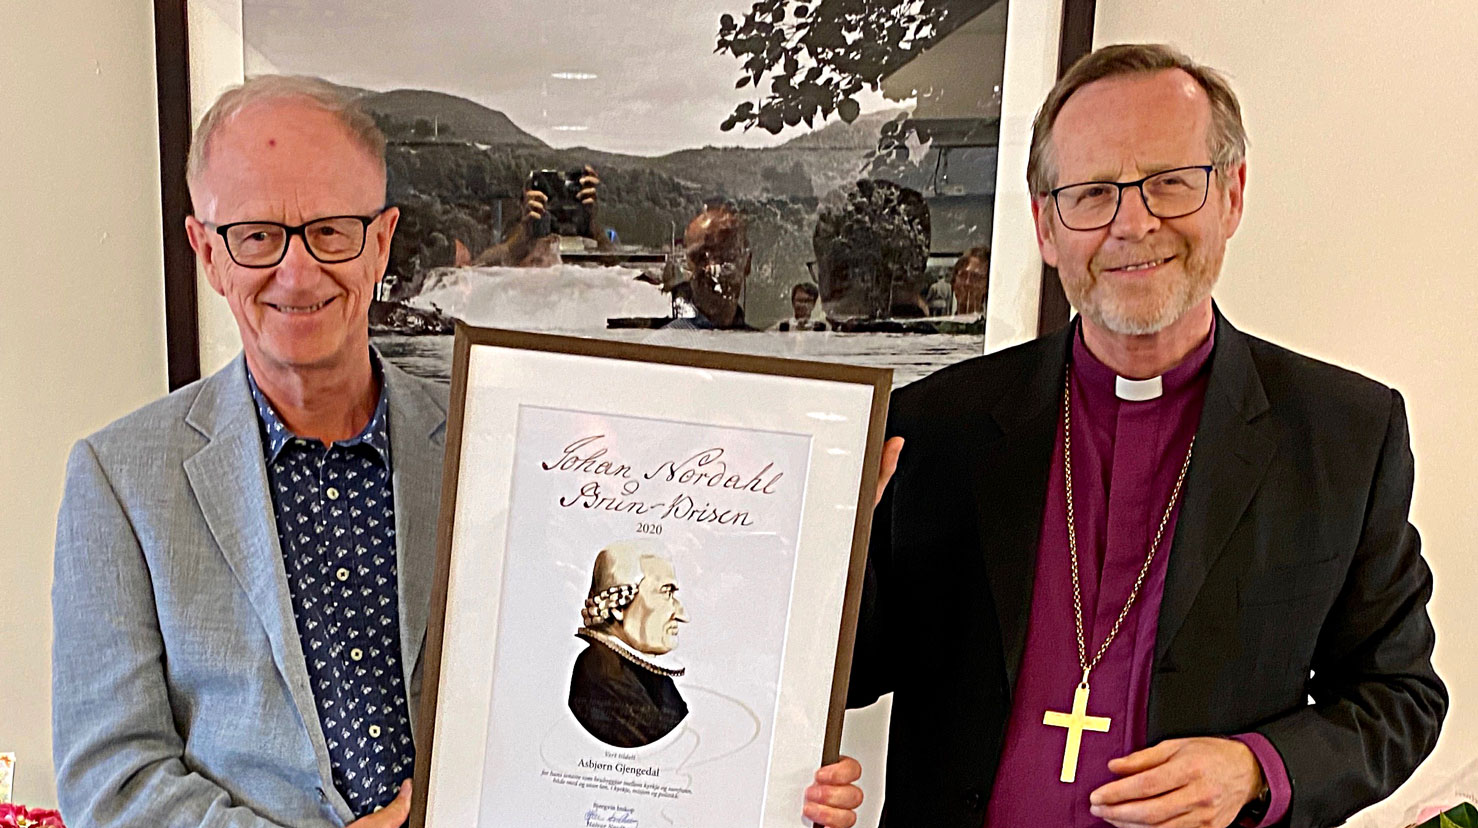 Asbjørn Gjengedal saman med biskop Halvor Nordhaug som delte ut Johan Nordahl Brun-prisen 2020. Foto: Vetle Karlsen Eide.